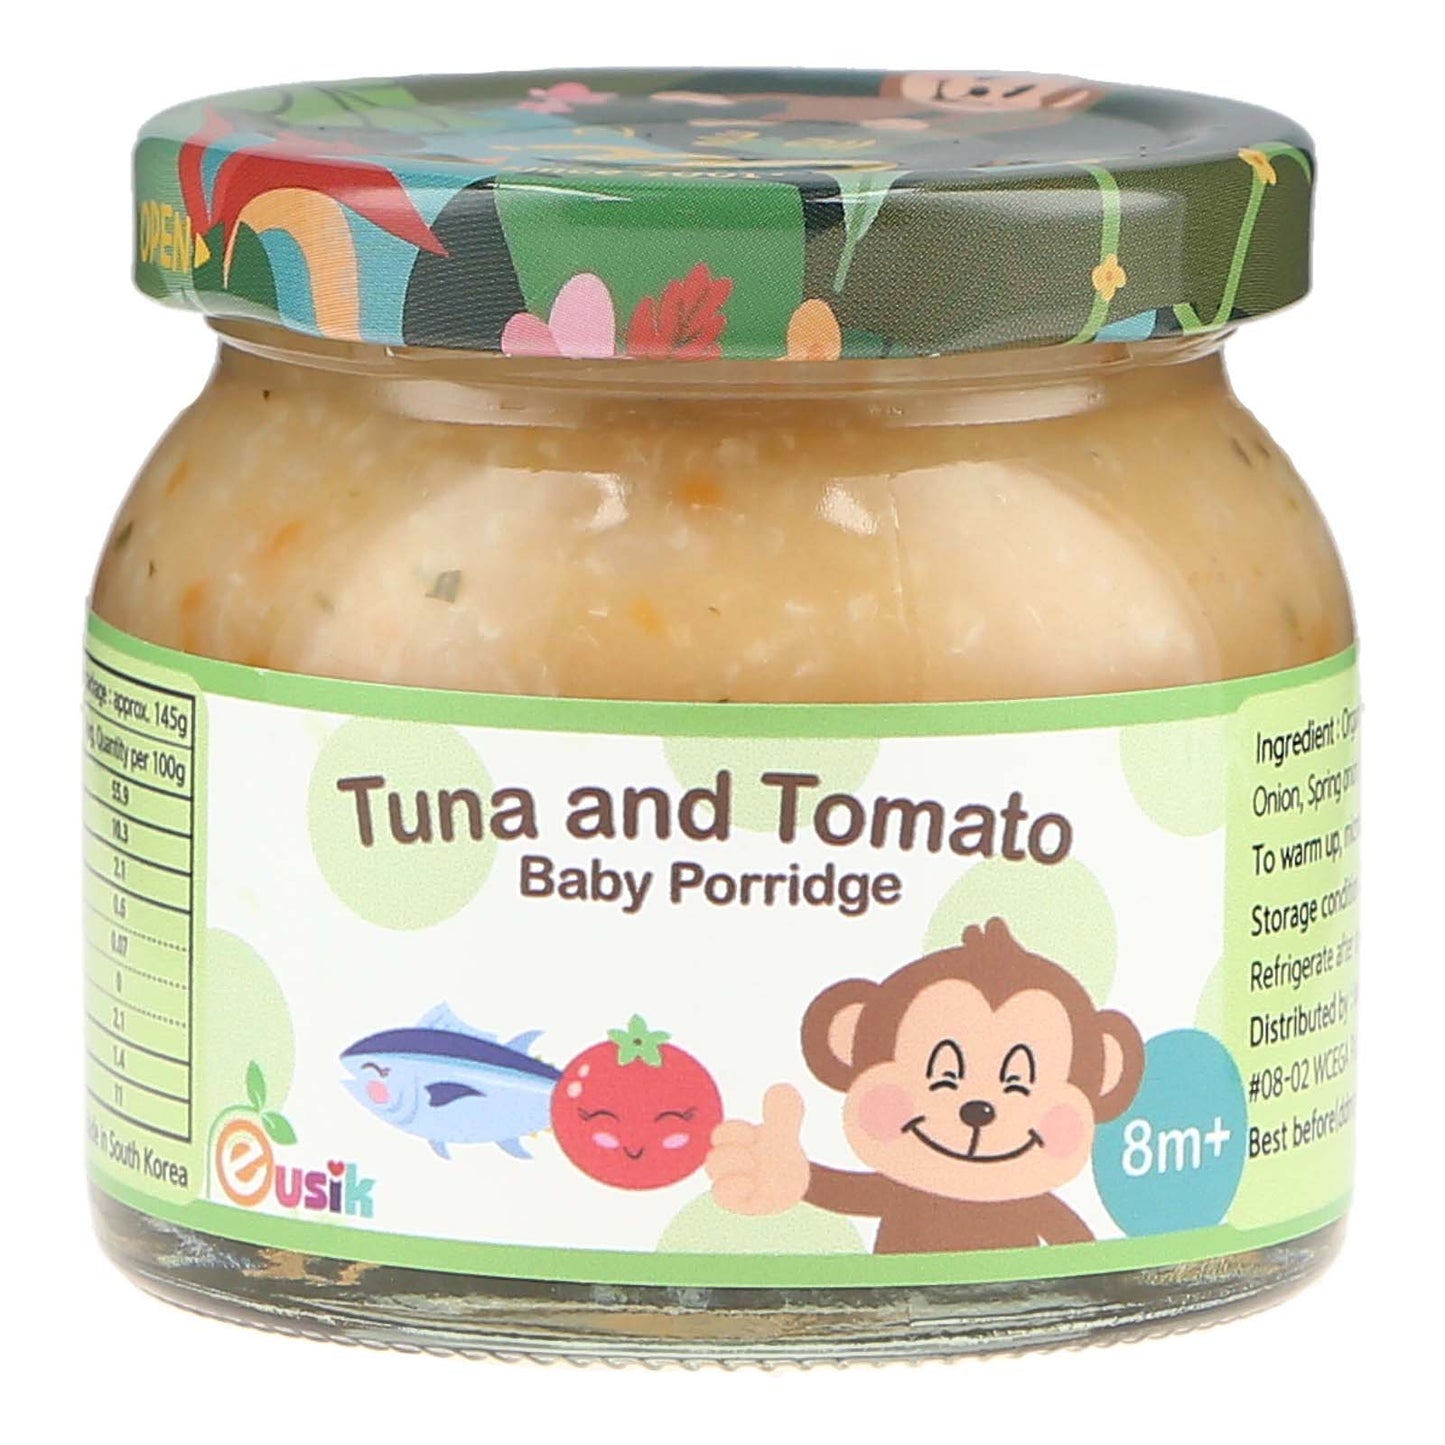 Eusik  - Baby Rice Porridge (Tuna & Tomato) 145g, 8mths+